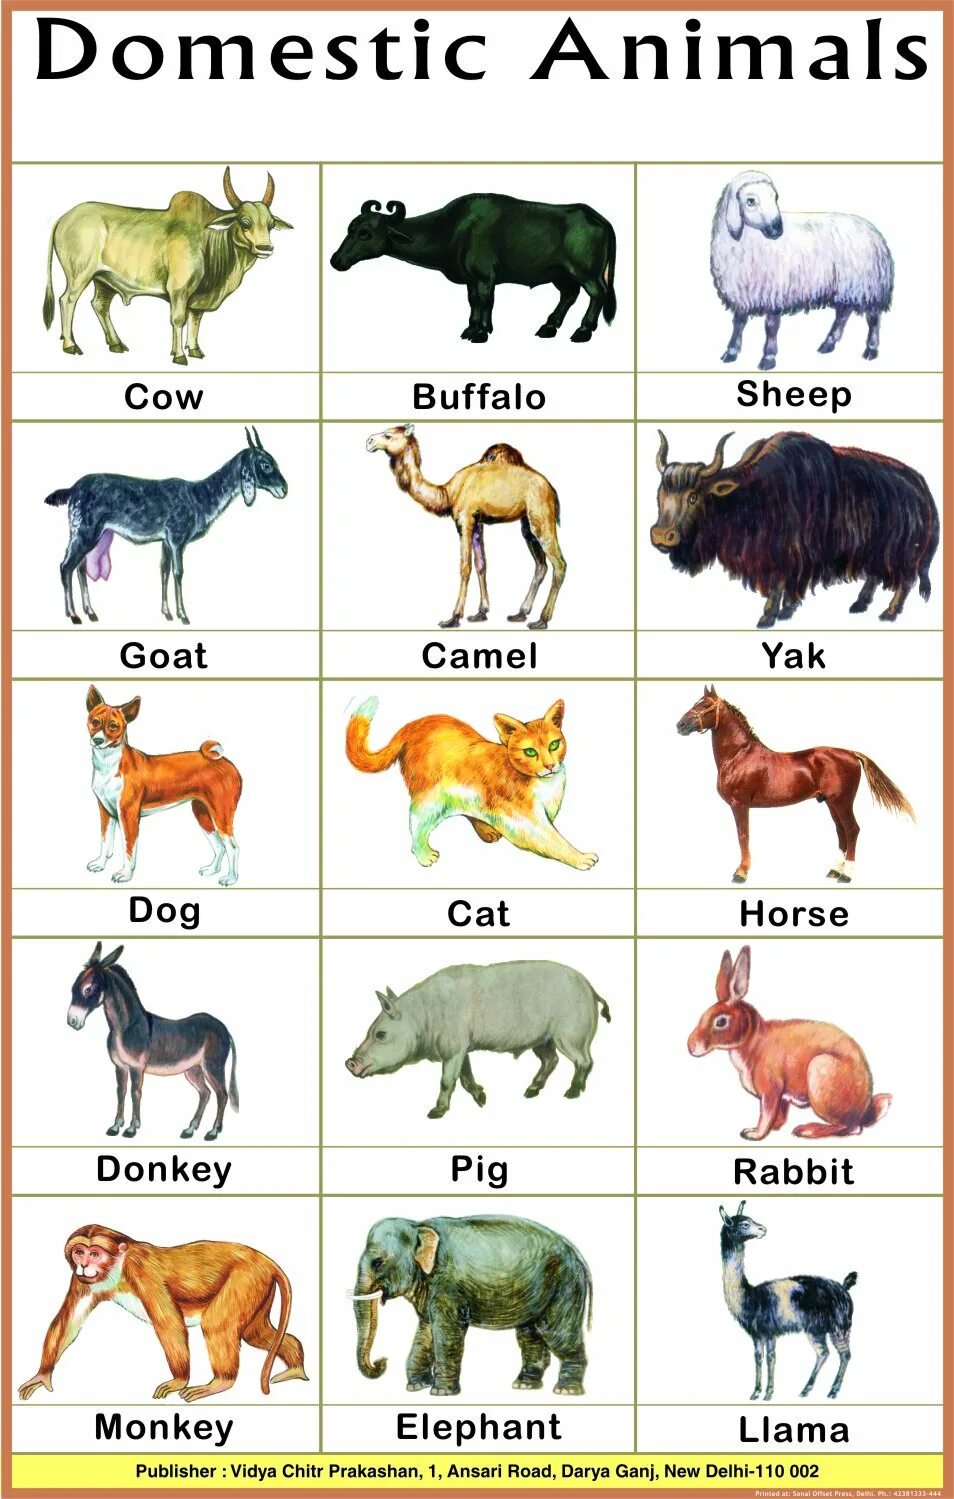 Домашние животные на английском. Домашние животные на английском языке для детей. Животные на английском для малышей. Дикие и домашние животные по английскому.